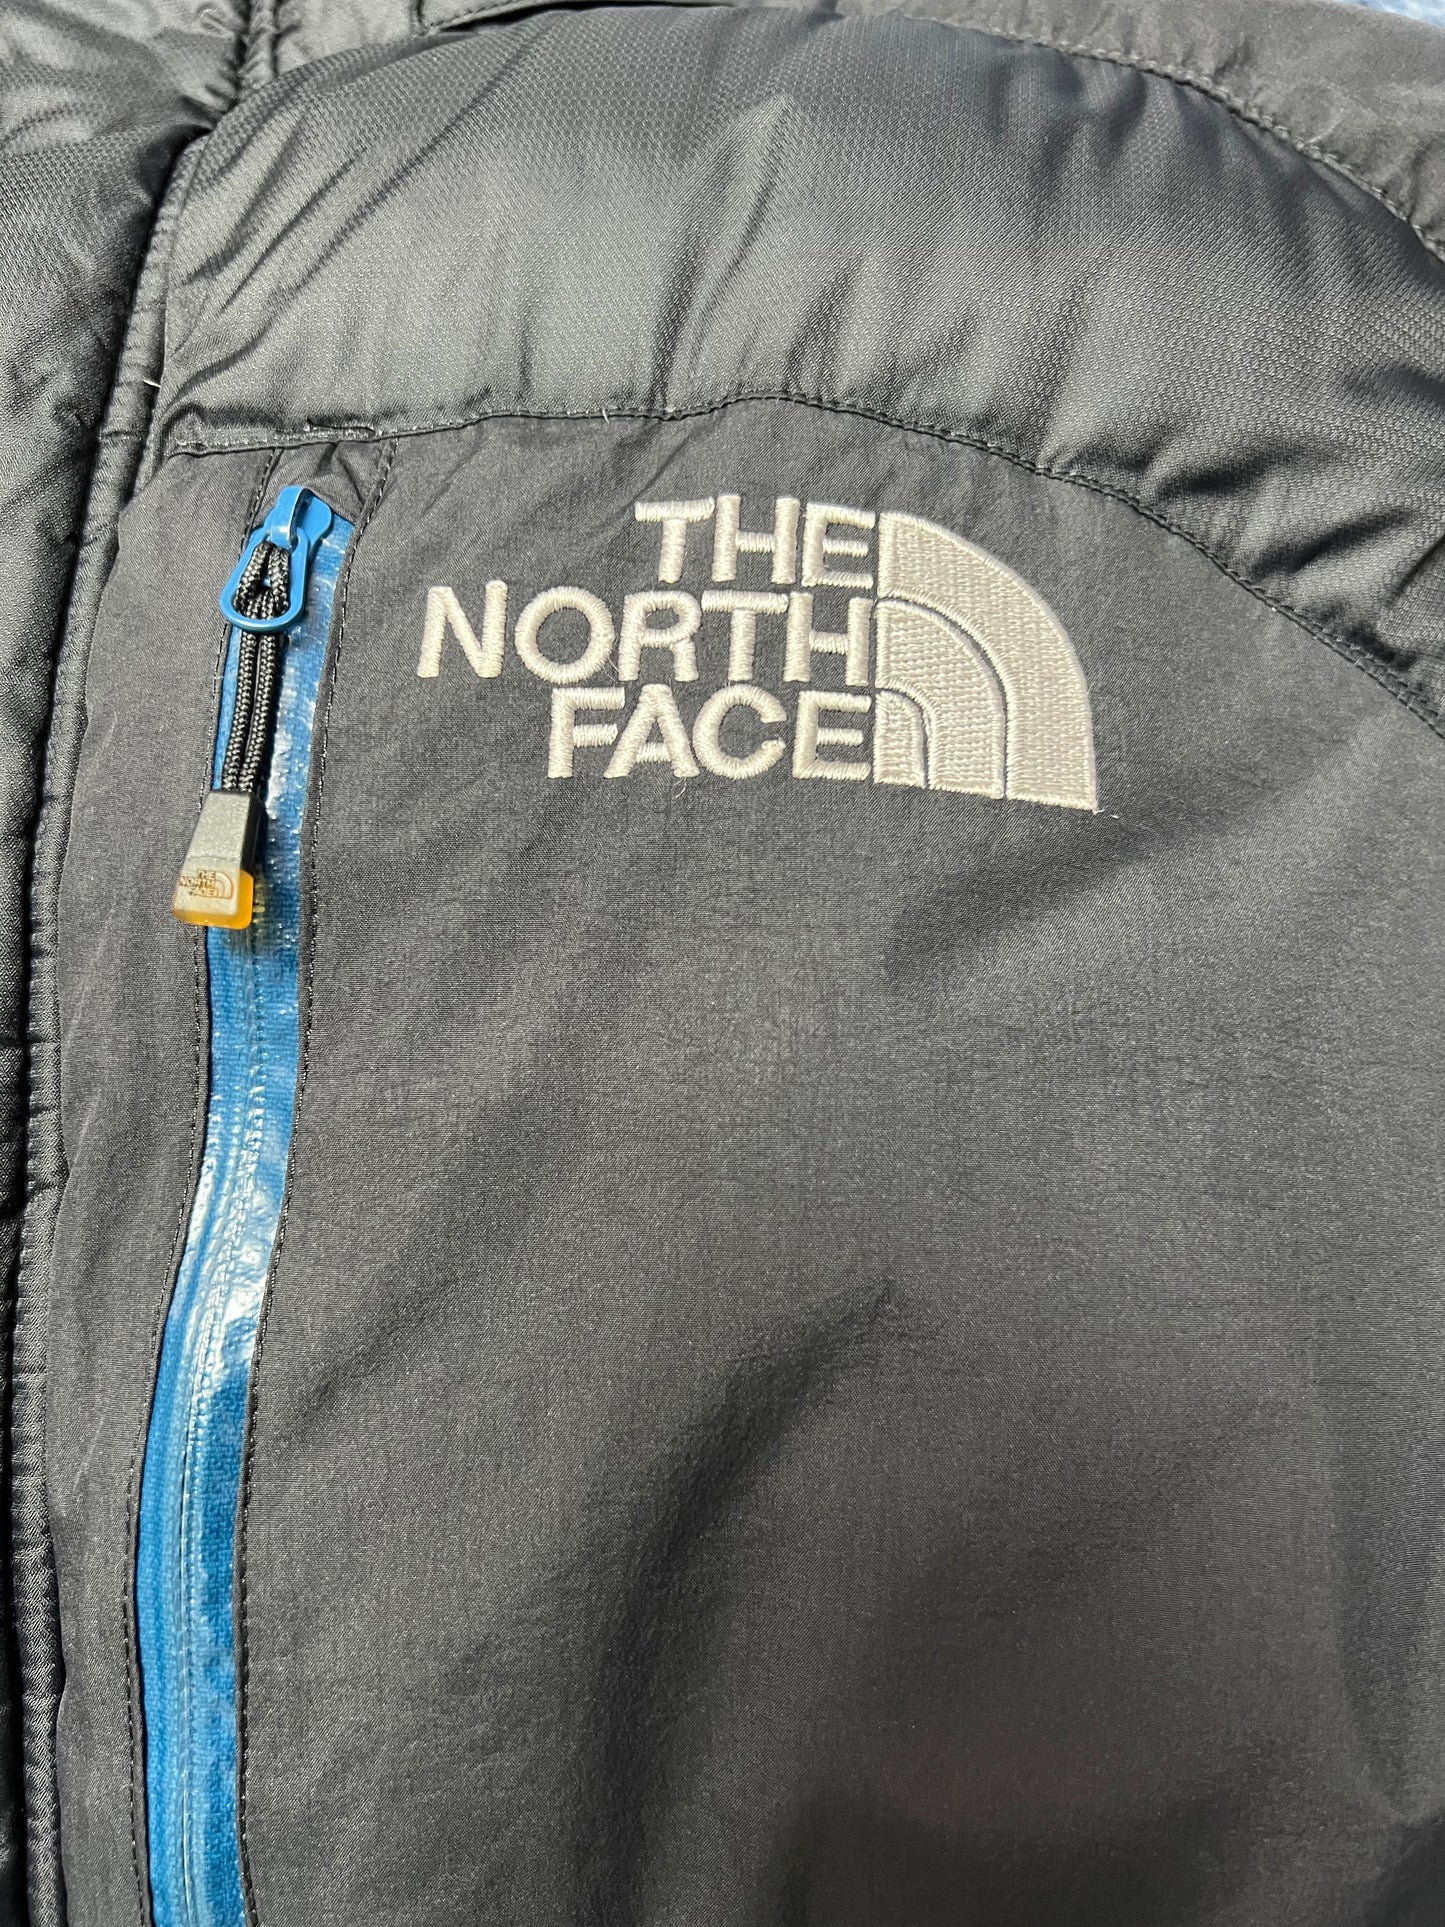 10030【THE NORTH FACE】ザノースフェイス メンズ HYVENT ハイベント ダウンジャケット 700フィル ブラック 95